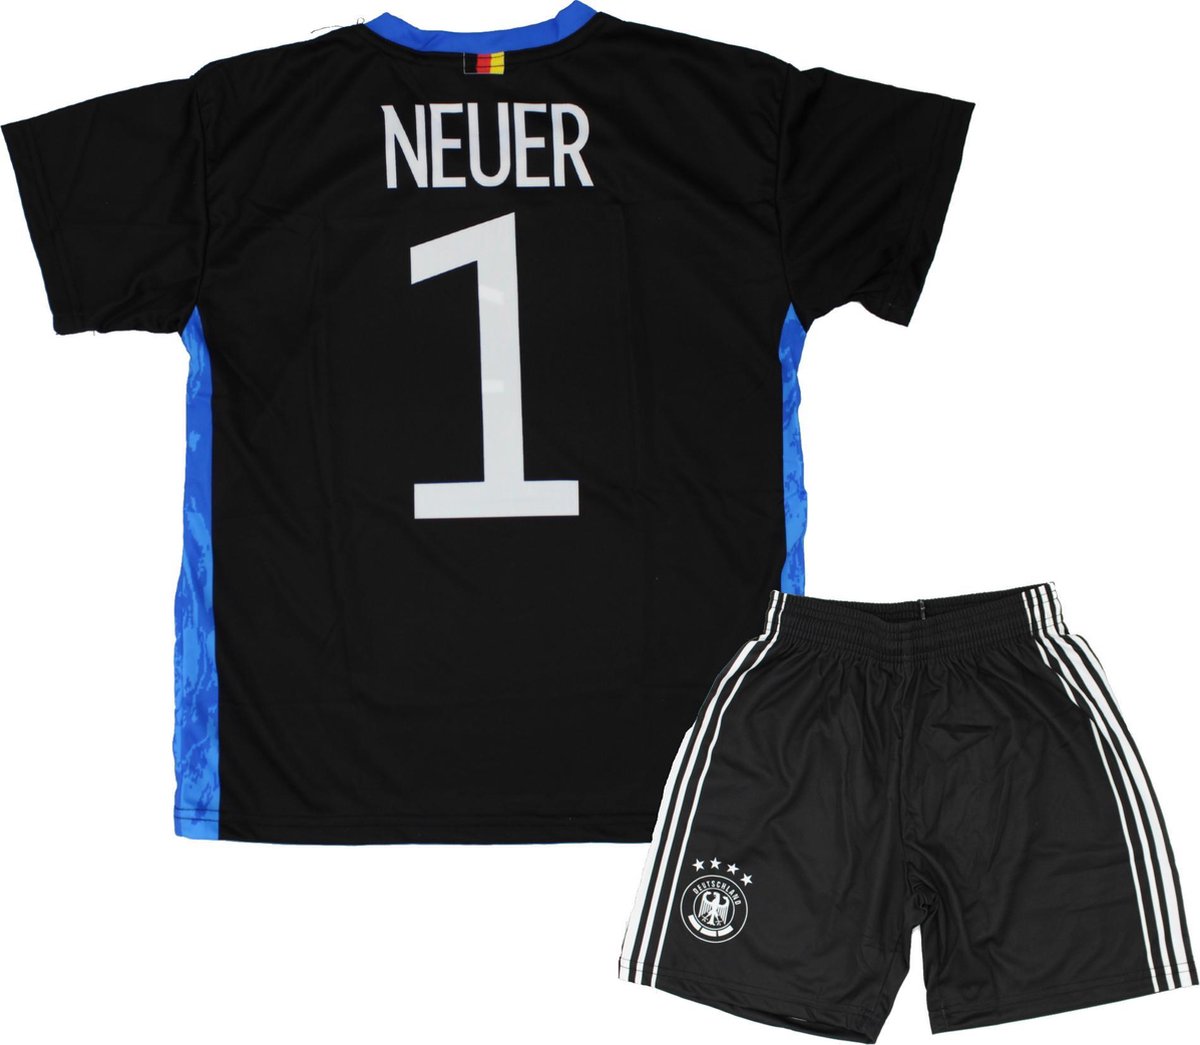 Neuer| Keepers Tenue 2021-2022 | Replica Voetbal Shirt + broekje set - Duitsland EK/WK voetbaltenue - Maat M